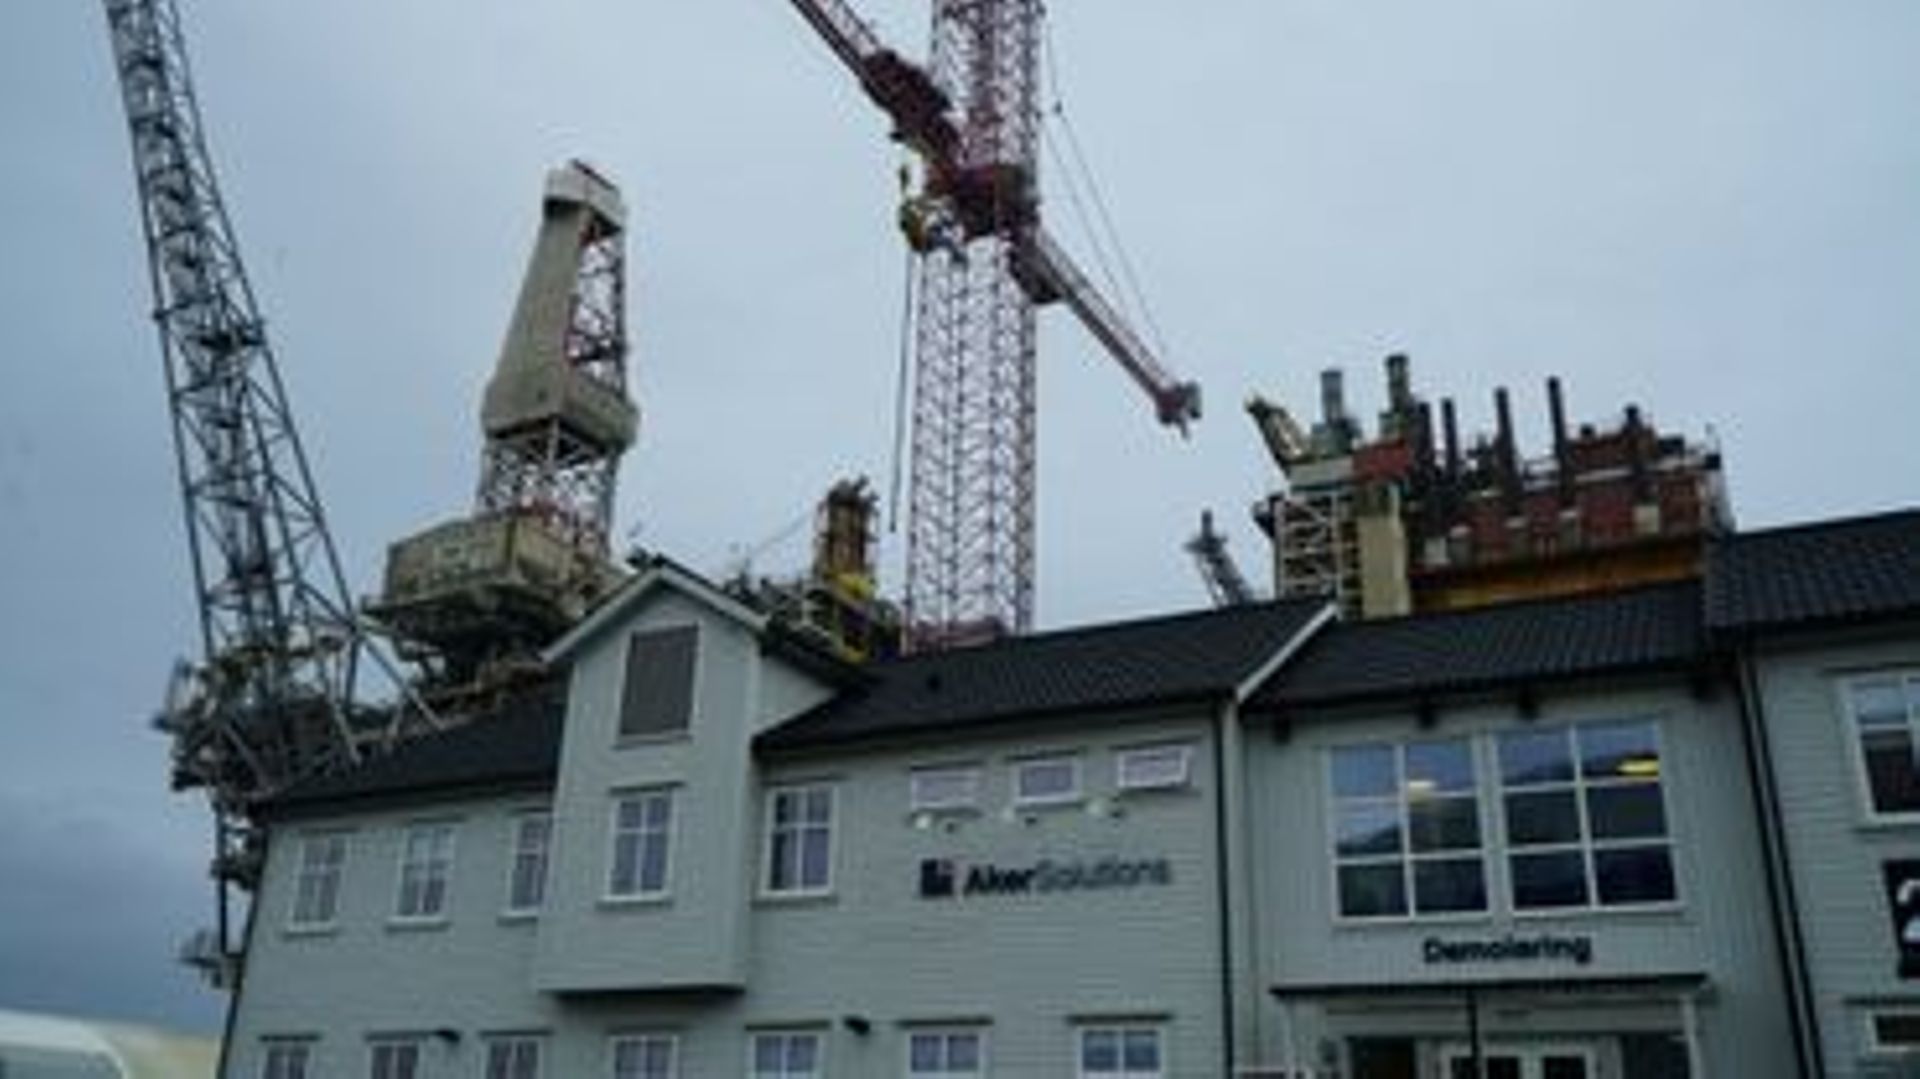 L'entrée du chantier Aker Solution où sont démantelées des plateformes pétrolières désaffectées, le 17 juin 2022 à Stordd, en Norvège.